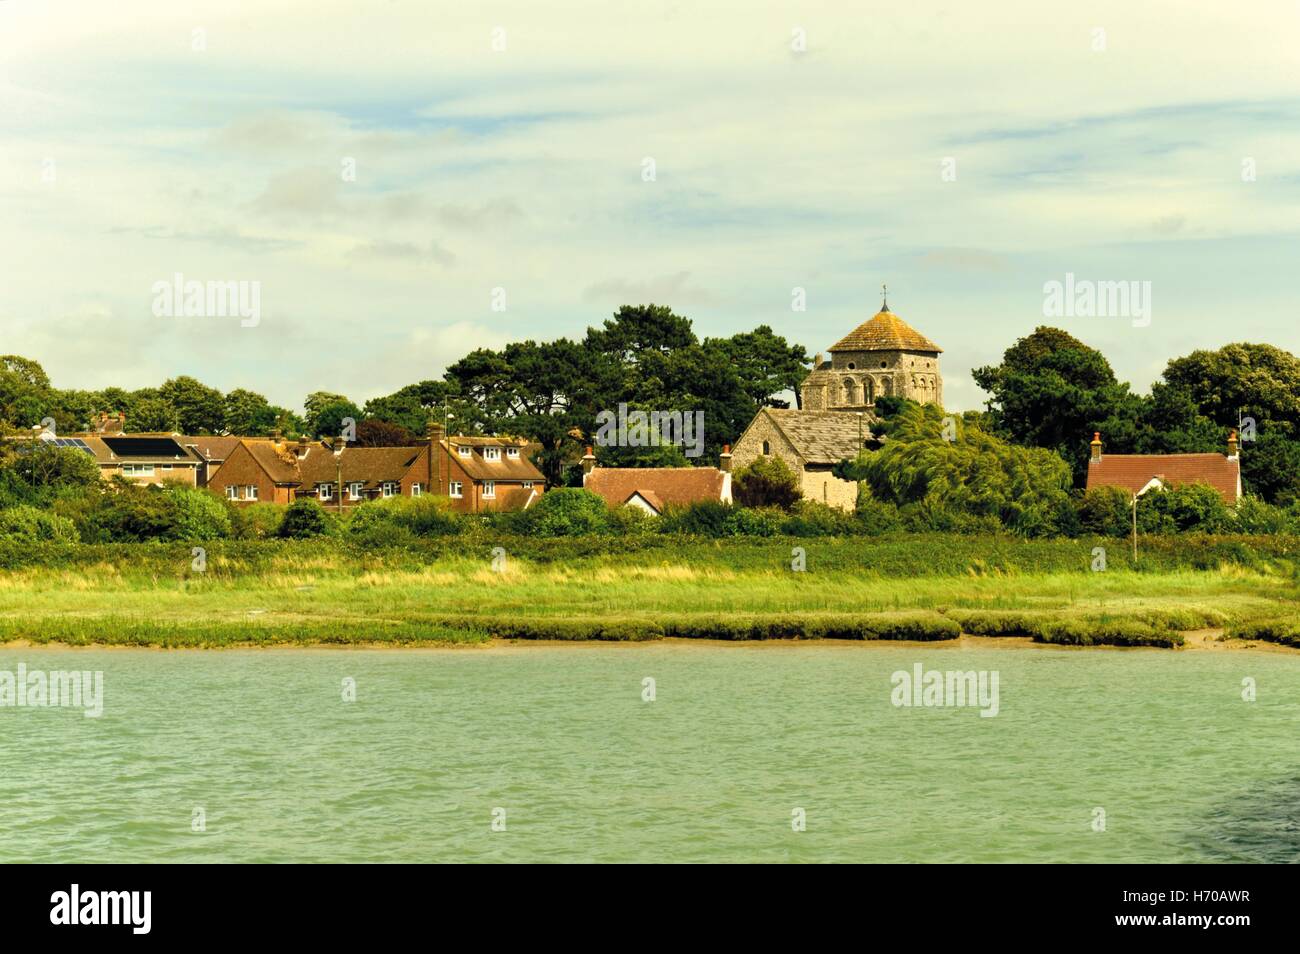 La vue sur la rivière Adur près de Shoreham-by-Sea, Angleterre Banque D'Images